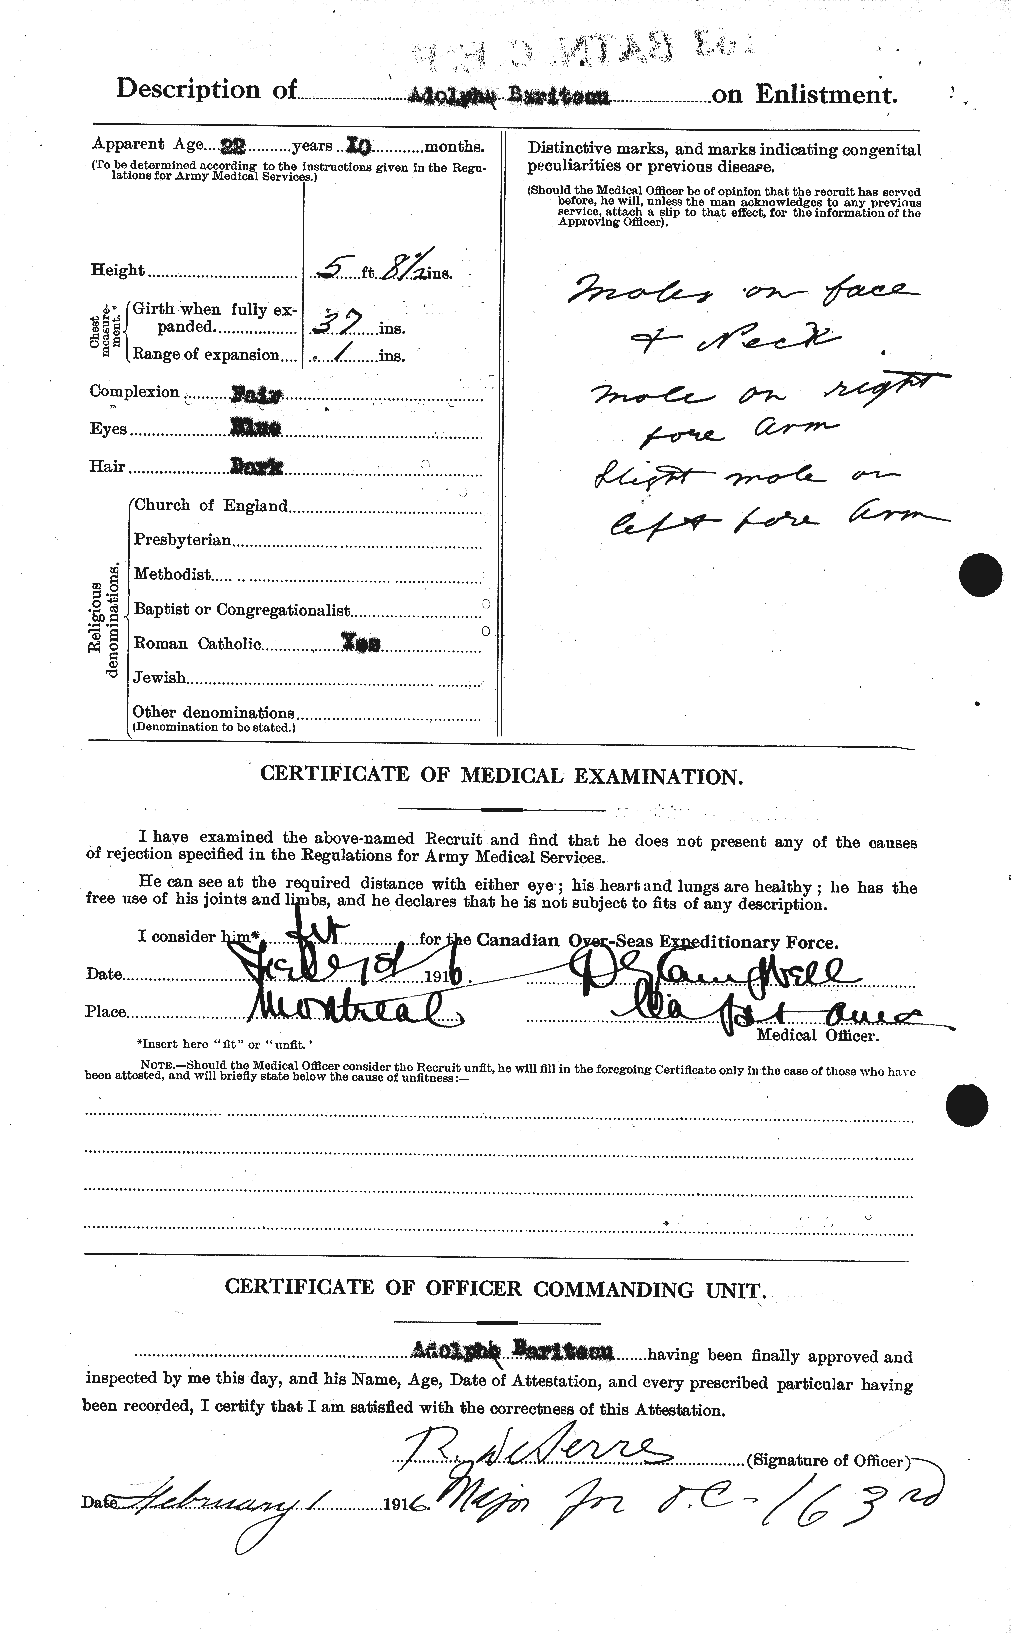 Dossiers du Personnel de la Première Guerre mondiale - CEC 227675b